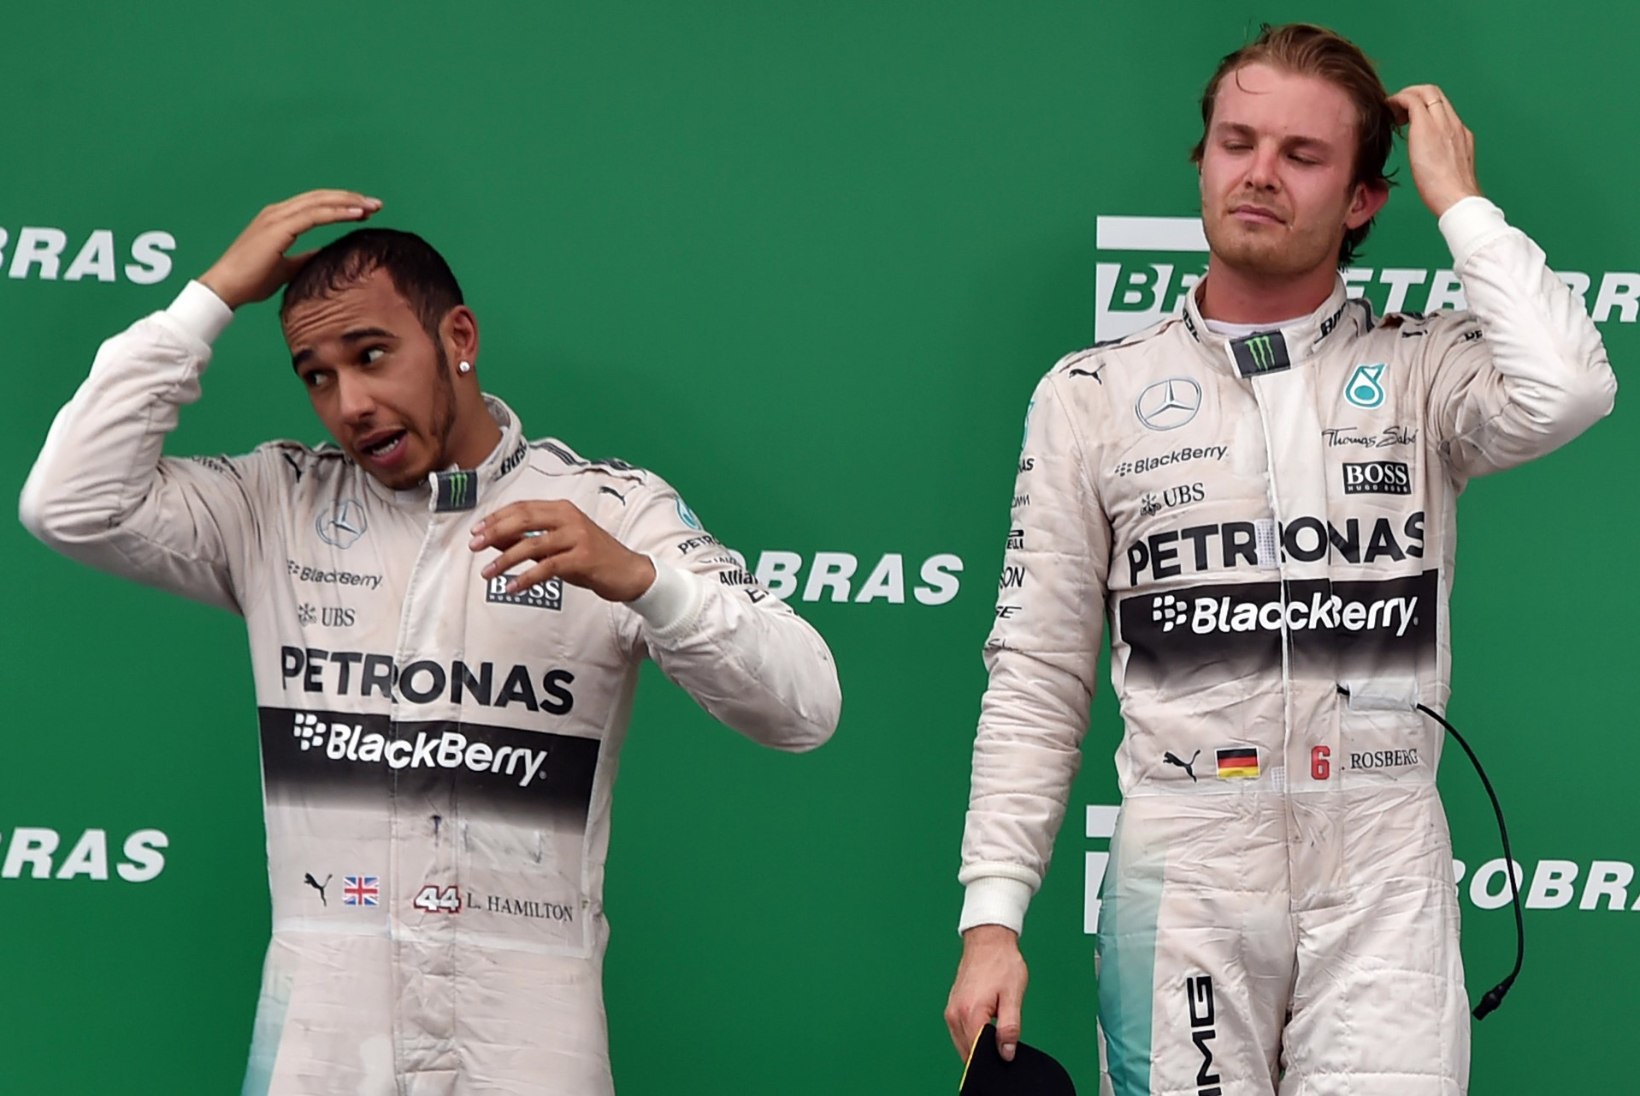 Mercedese boss: kui Hamilton ja Rosberg tülitsemist jätkavad, võime kaaluda ühe minema saatmist